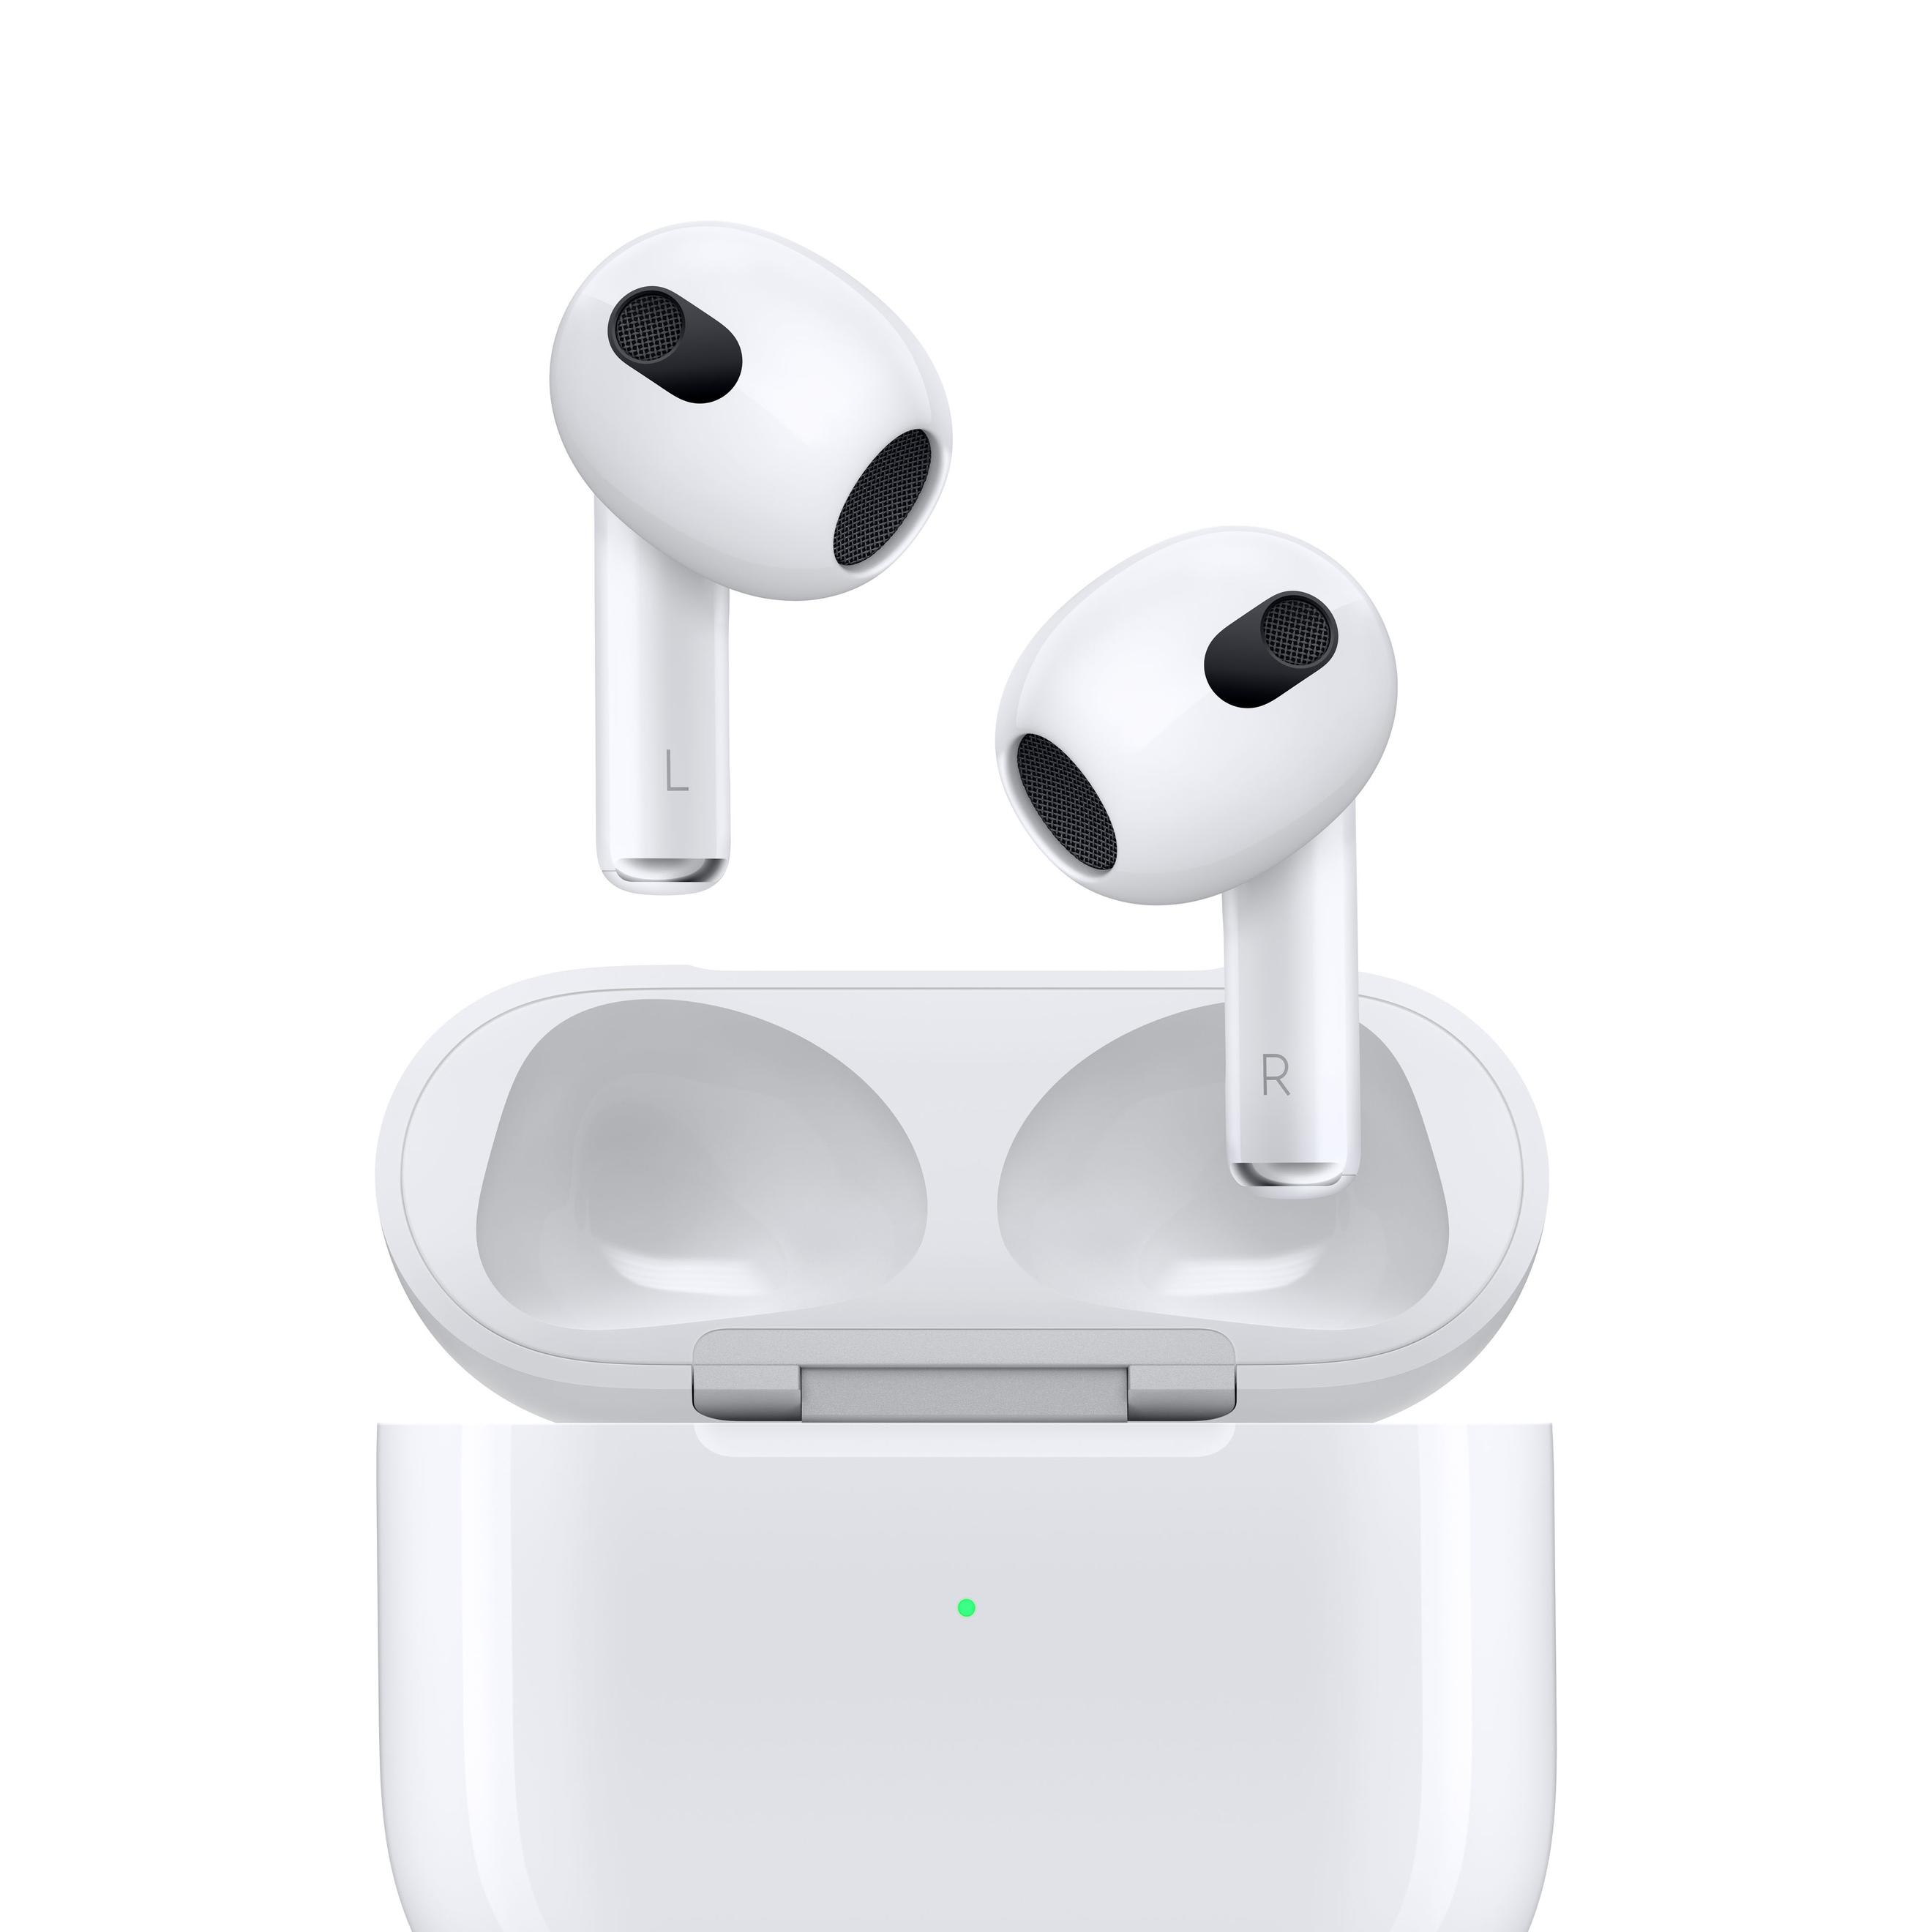 Offerta per Apple - AirPods (terza generazione) a 179€ in Carrefour Ipermercati